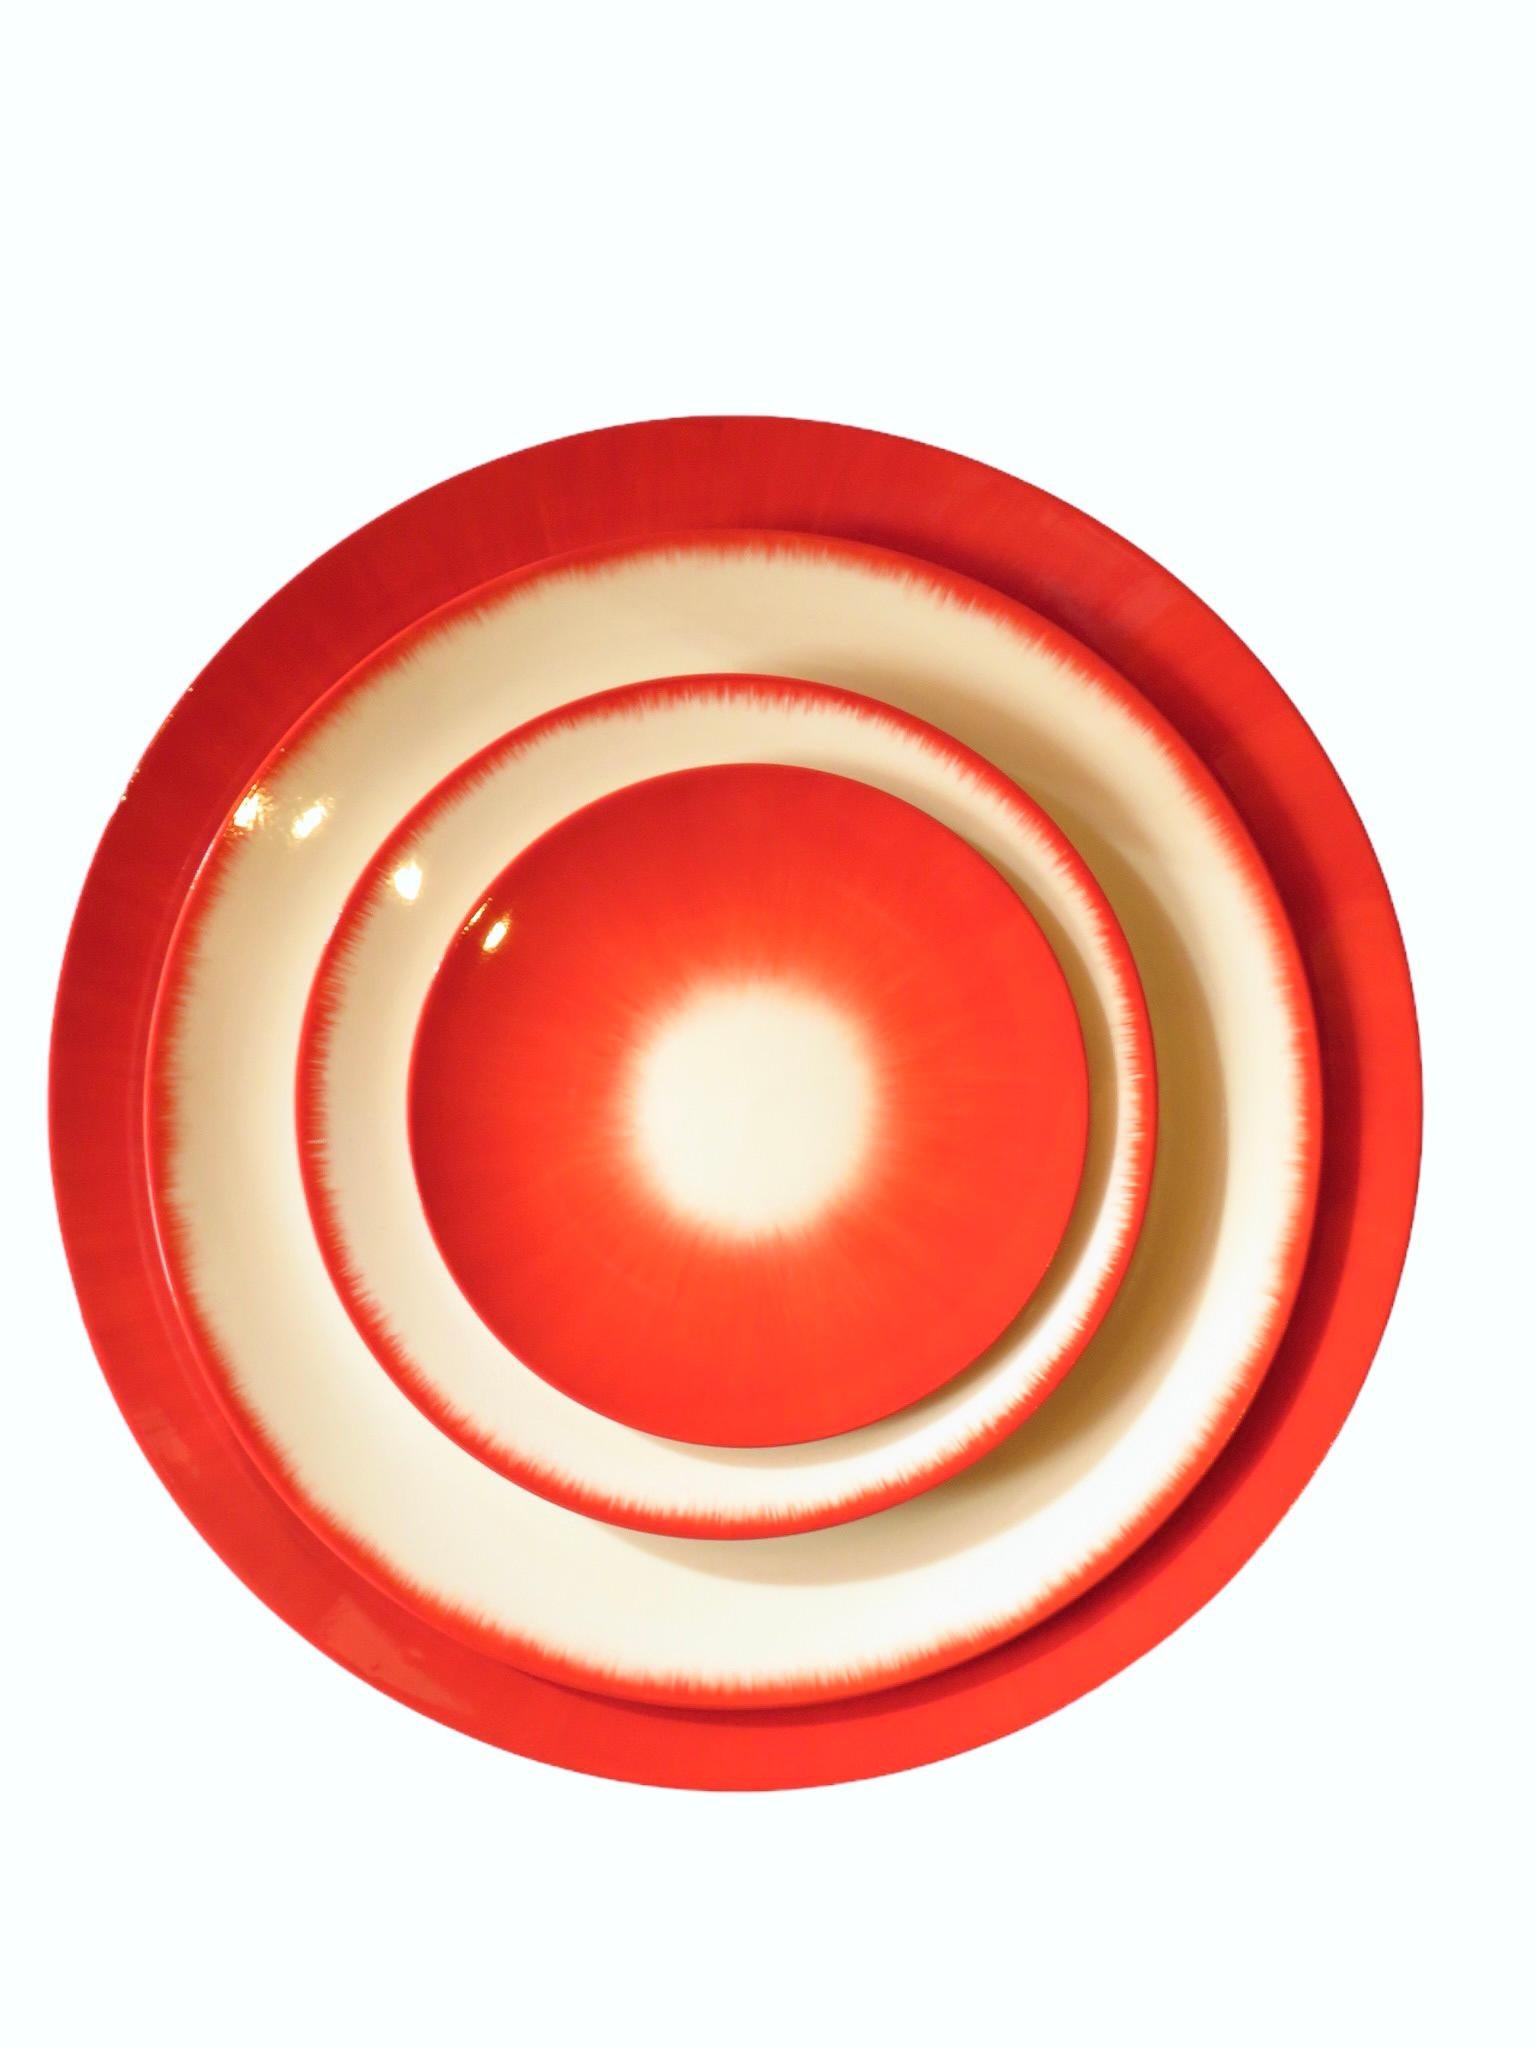 Ann Ann Demeulemeester für Serax, 14 cm rote Teller (Set von zwei) für Damen oder Herren im Angebot